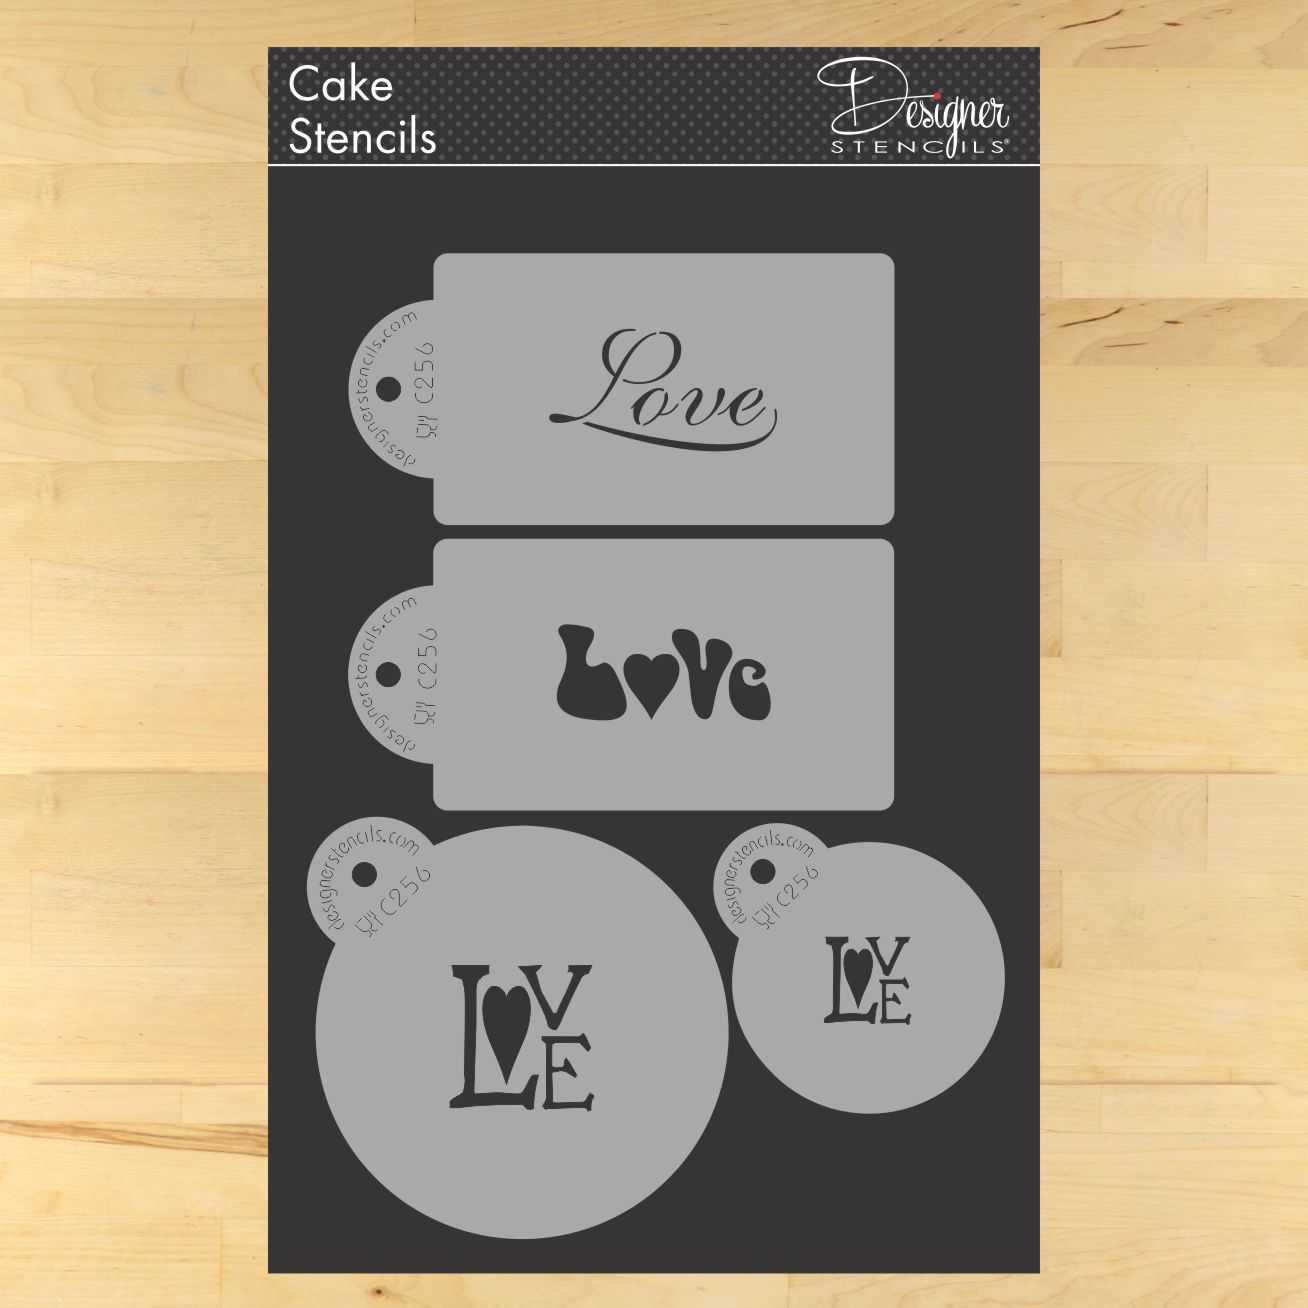 Love Cake and Cookie Stencil Set by Designer Stencils